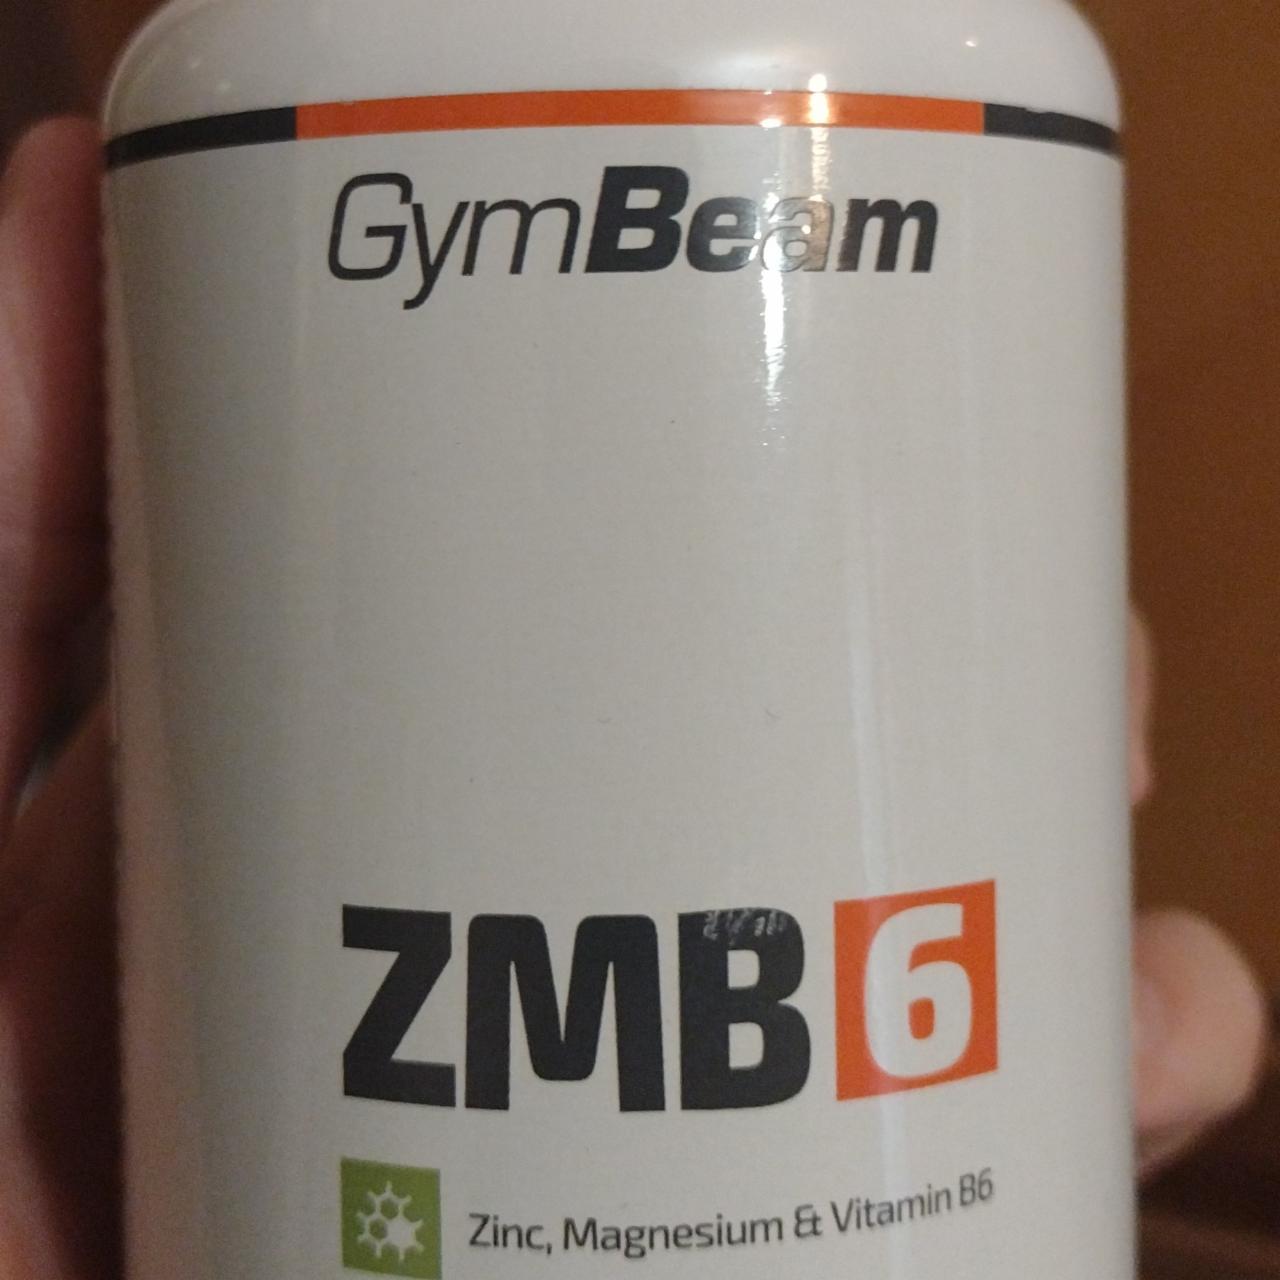 Фото - ZMB6 цинк, магний, витамин б6 Gym beam